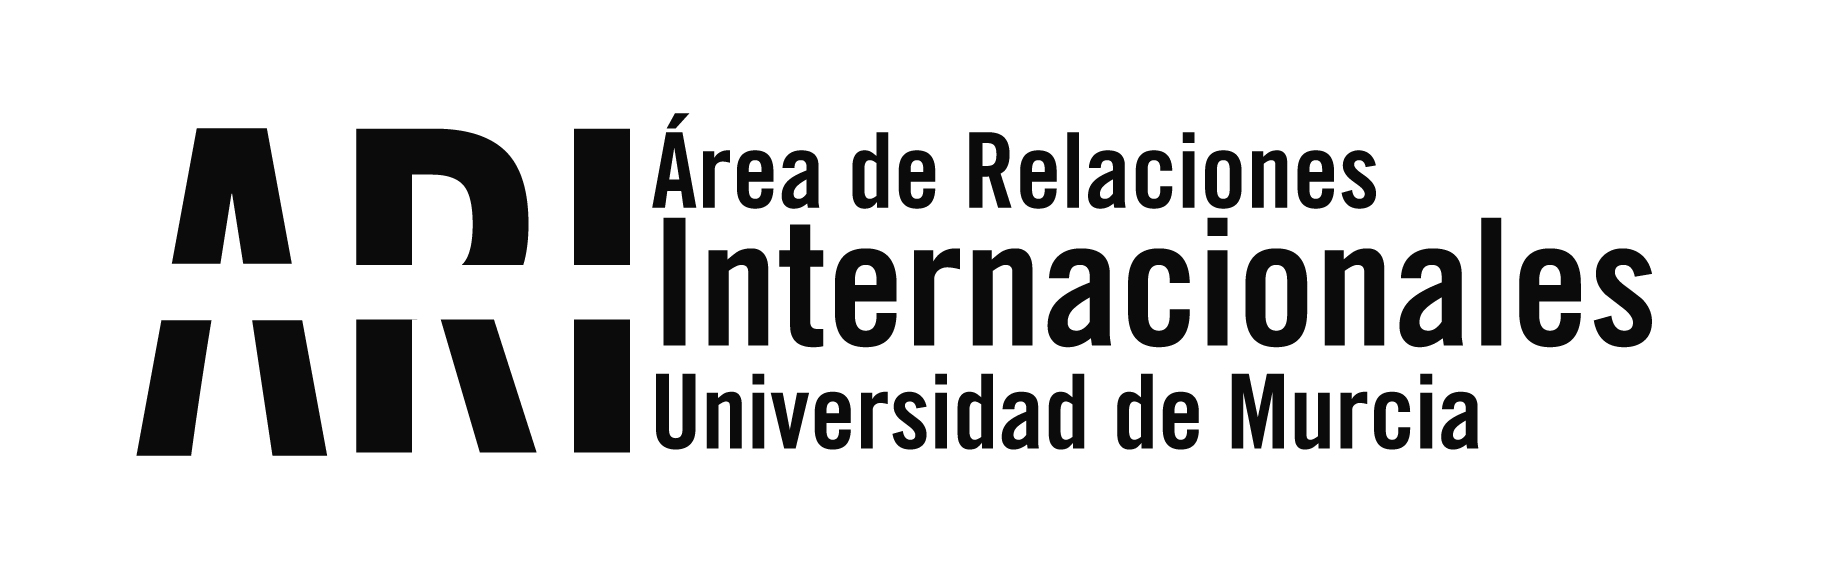 Suspension of all activities on Friday 13/09 - University closed - Área de Relaciones Internacionales